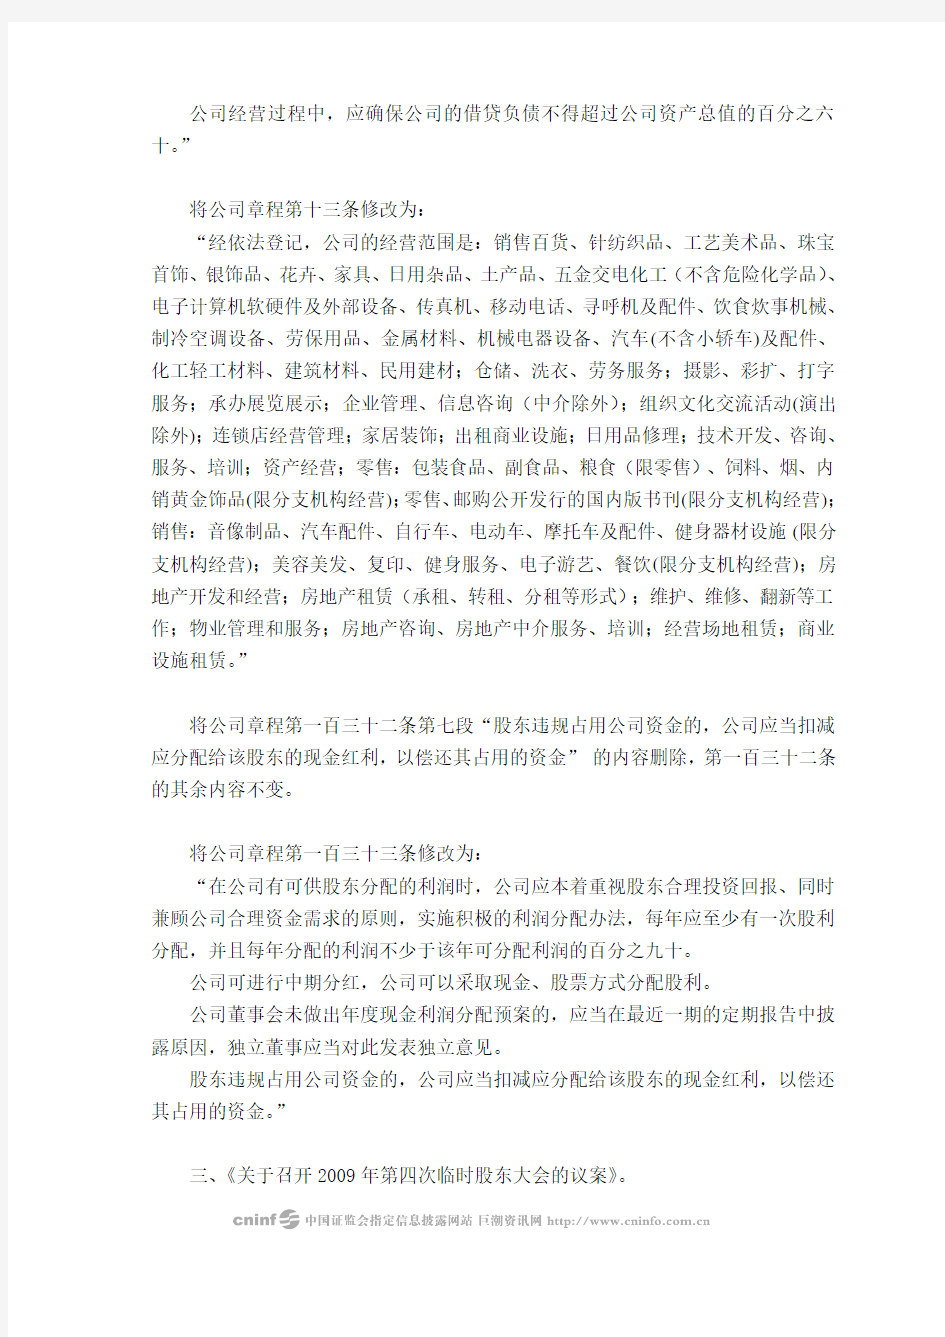 北京华联商厦股份有限公司第四届董事会第二十八次会议决议公告